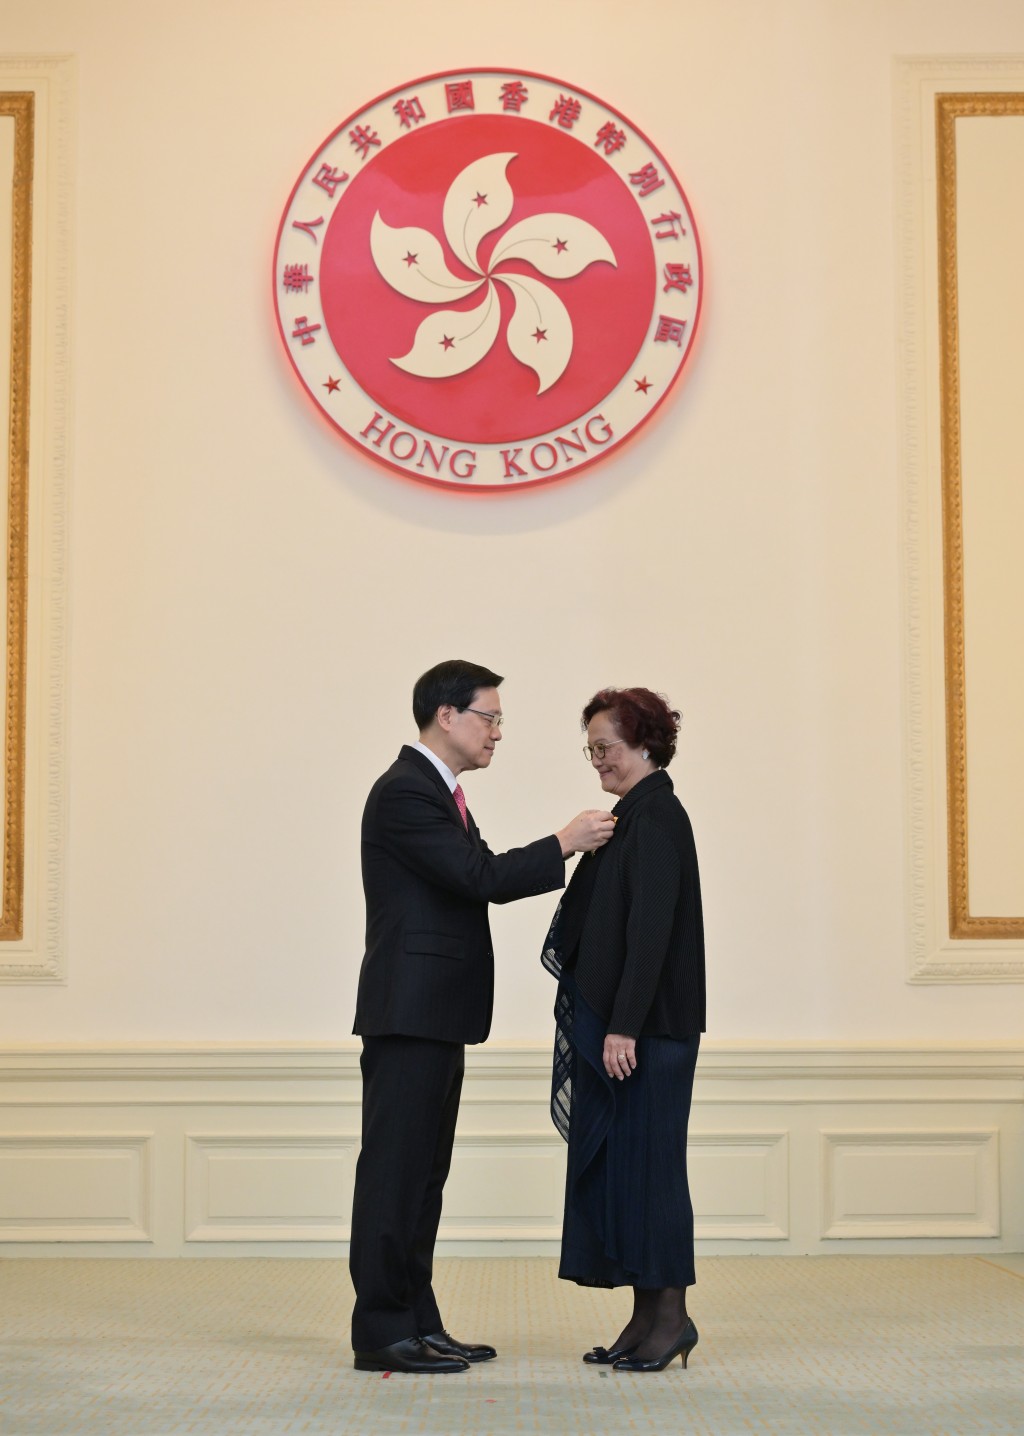 工聯會榮譽會長林淑儀獲頒發大紫荊勳章。政府新聞處圖片